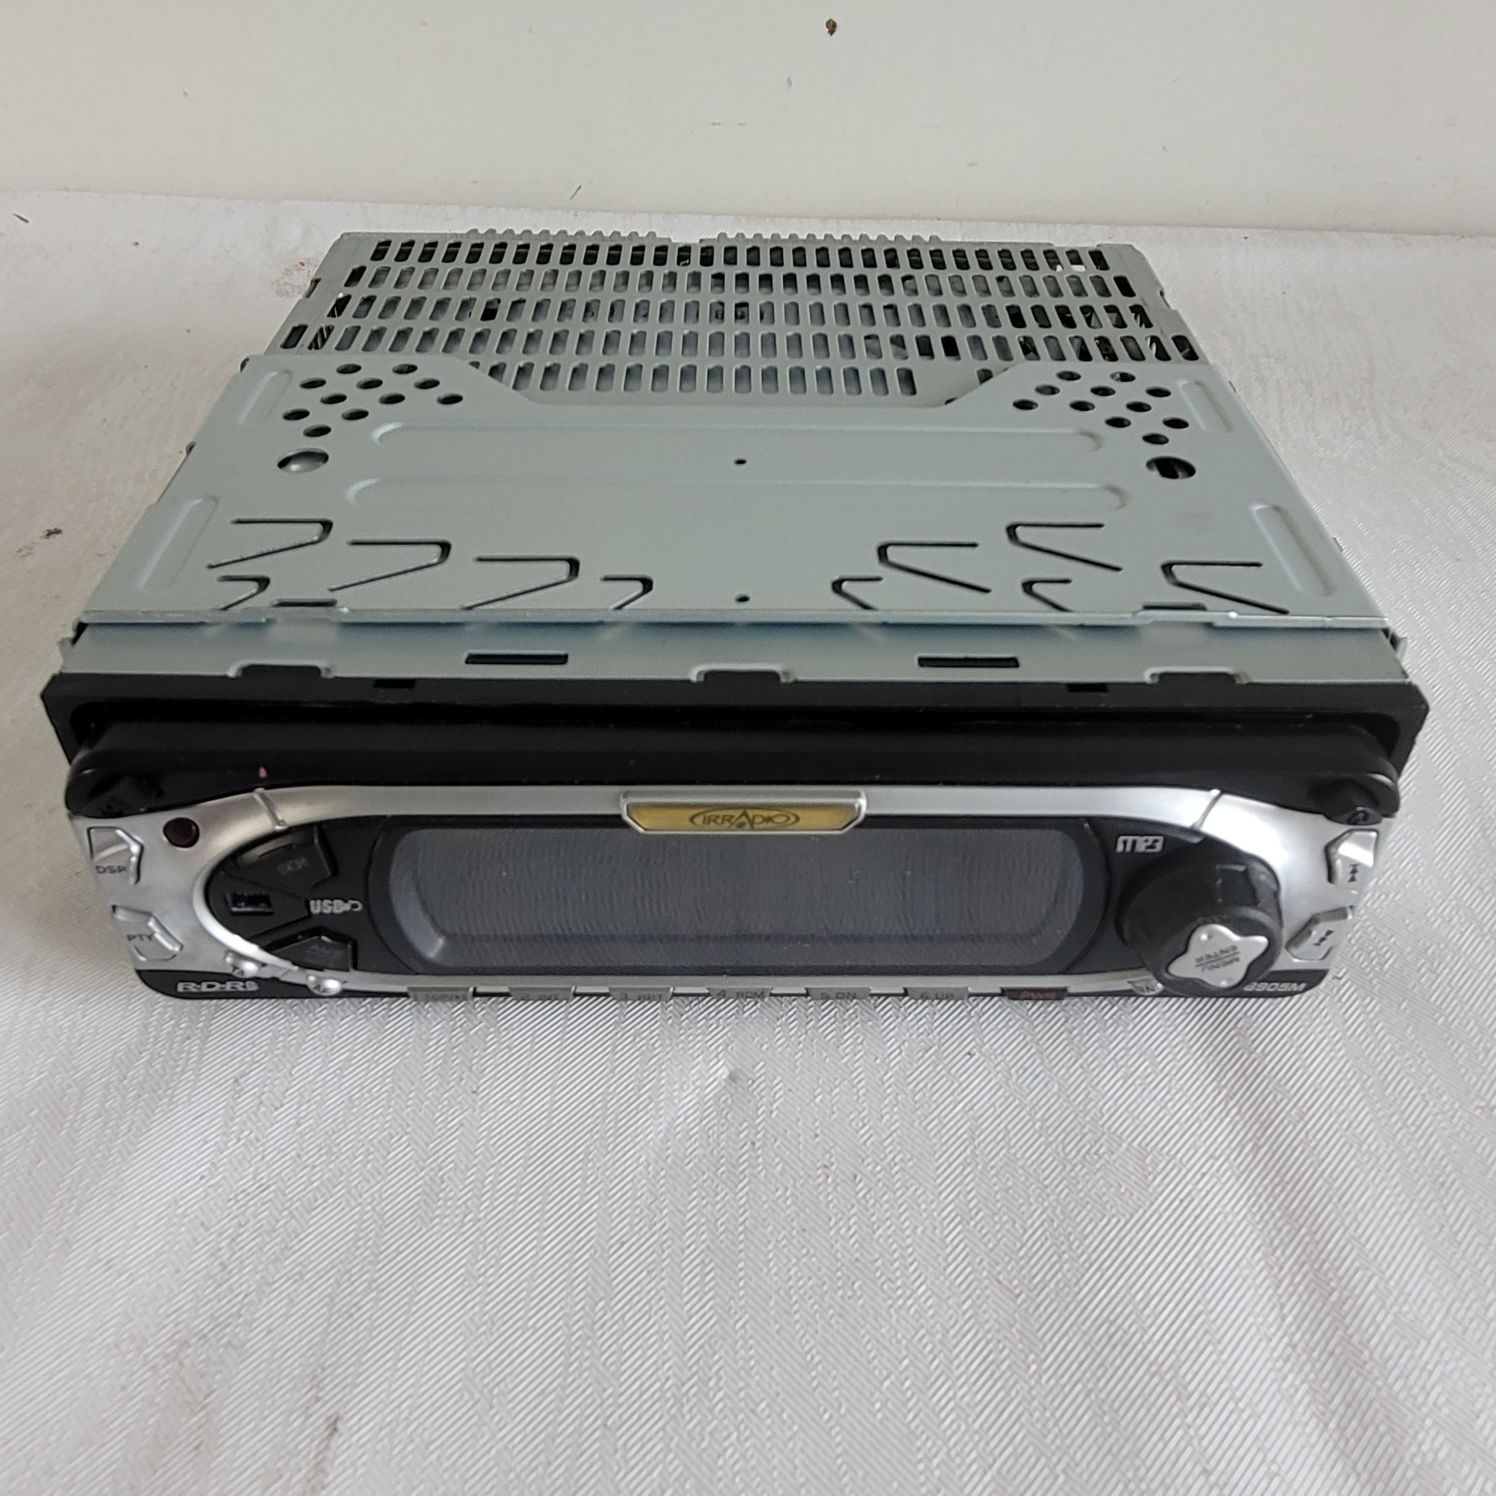 Odtwarzacz CD IRRADIO UXR-8905M